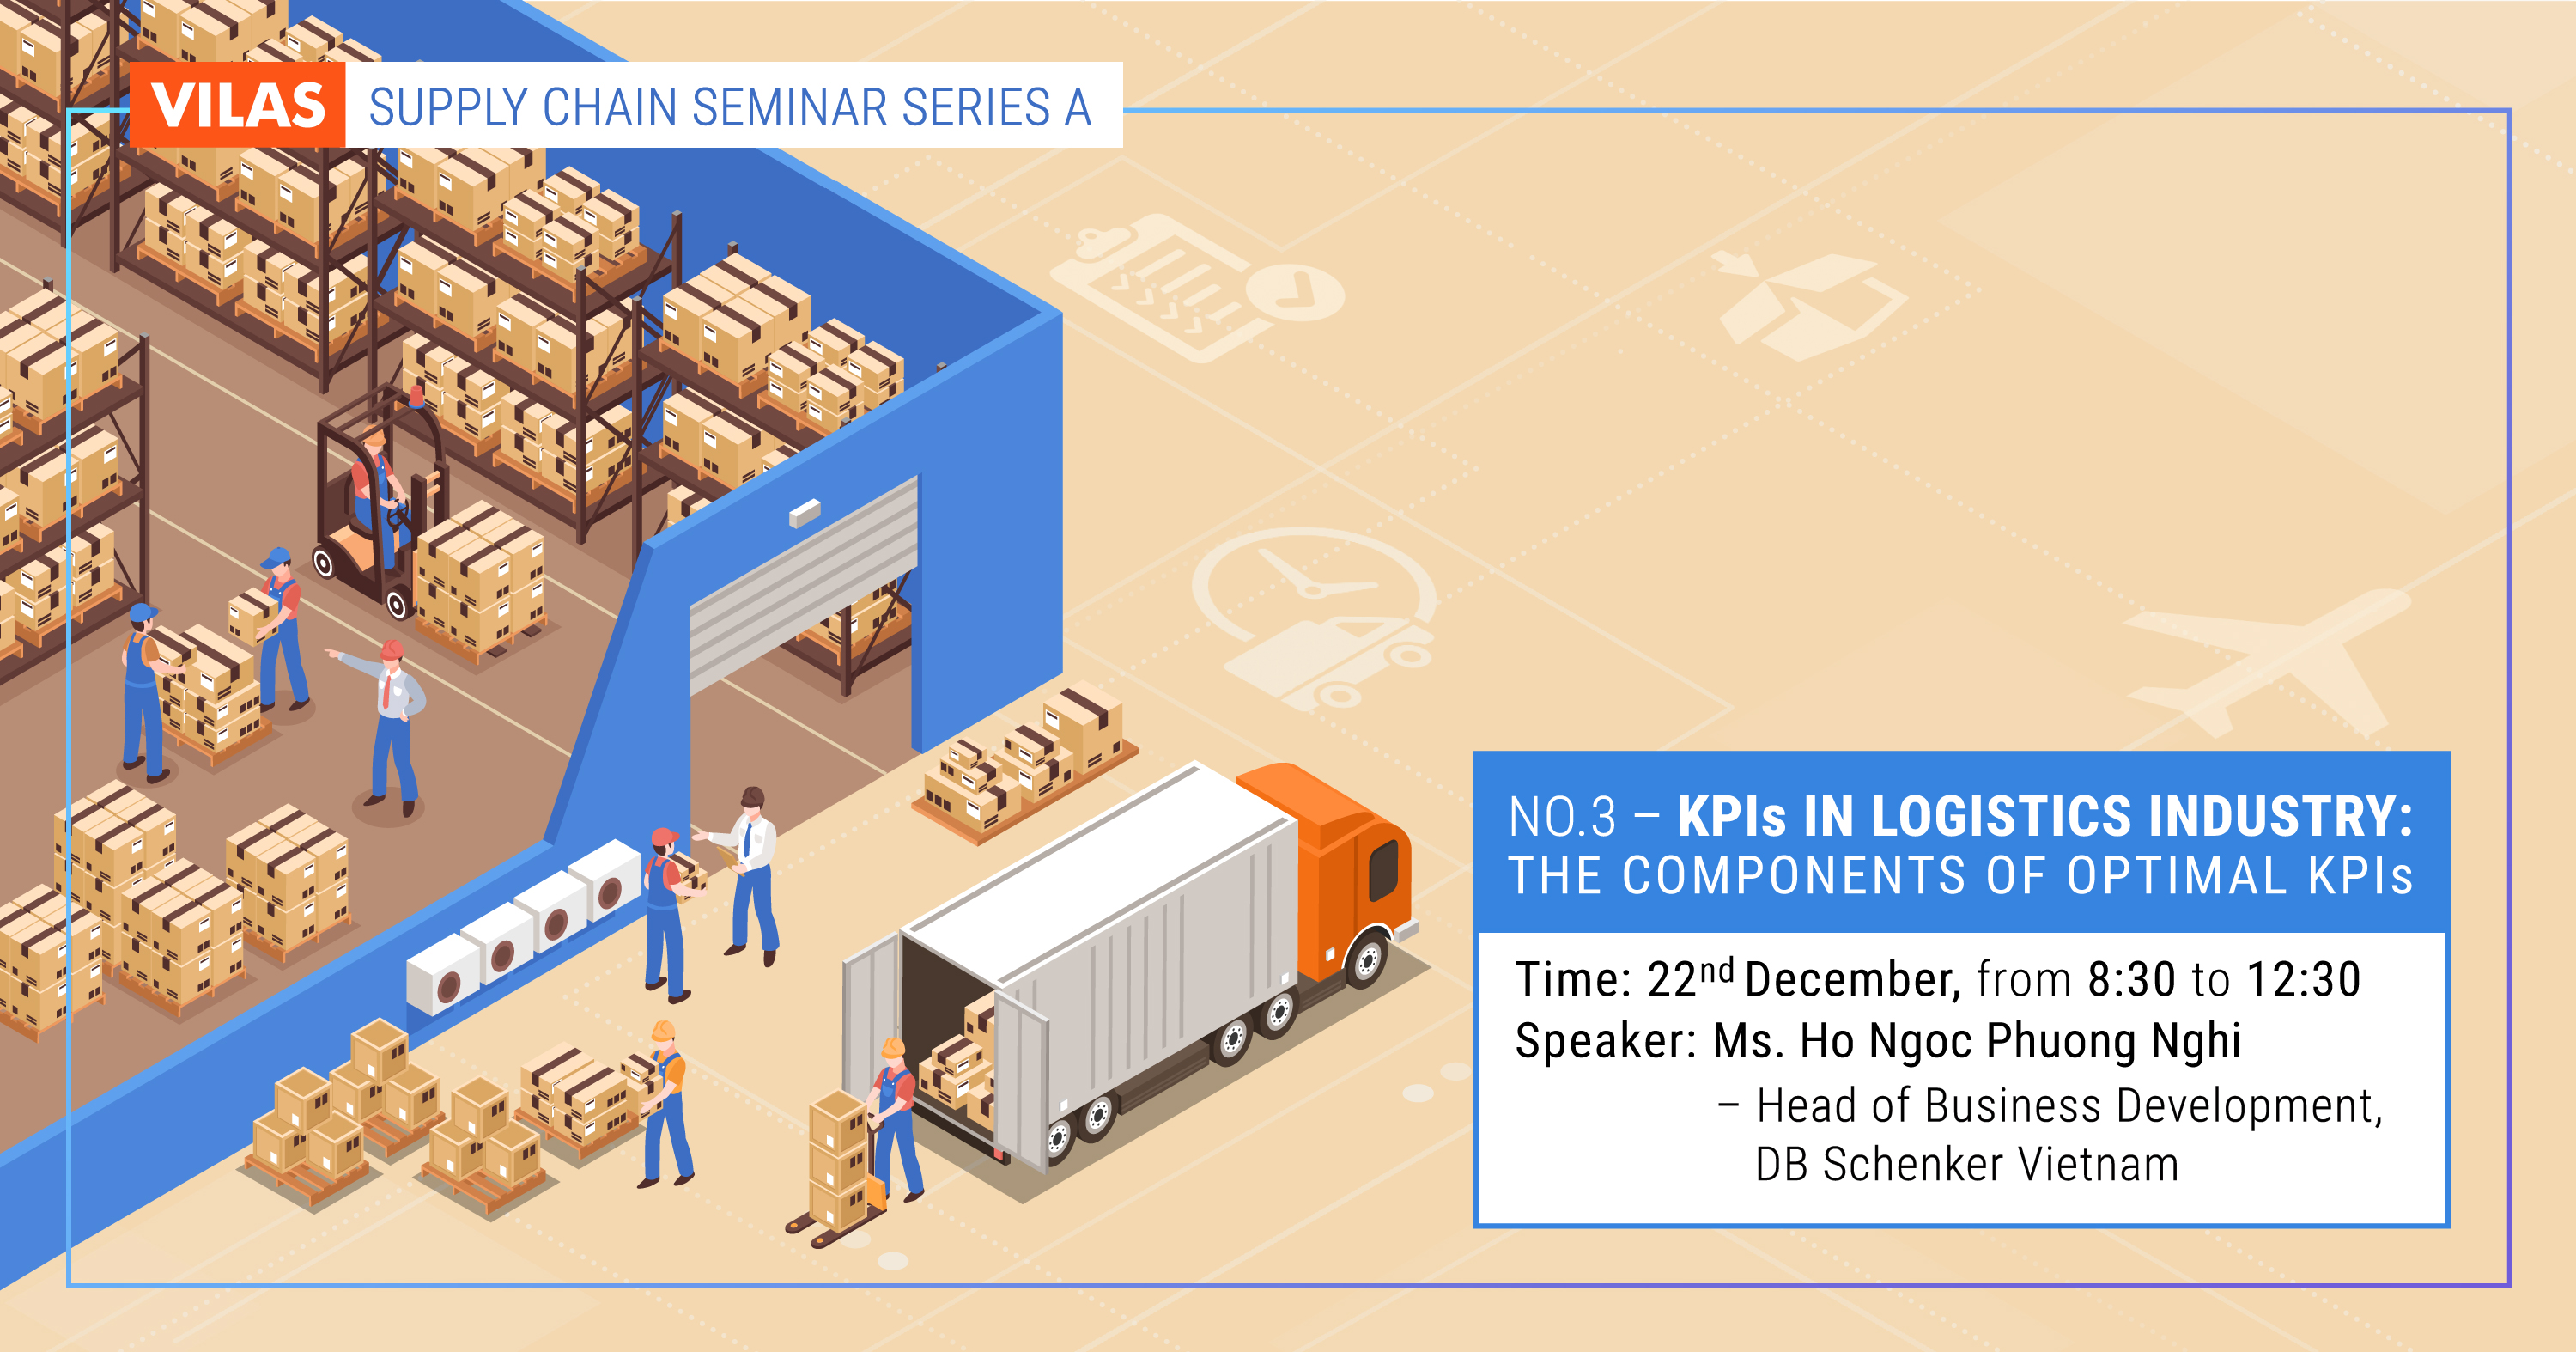 Supply Chain Seminar Series A